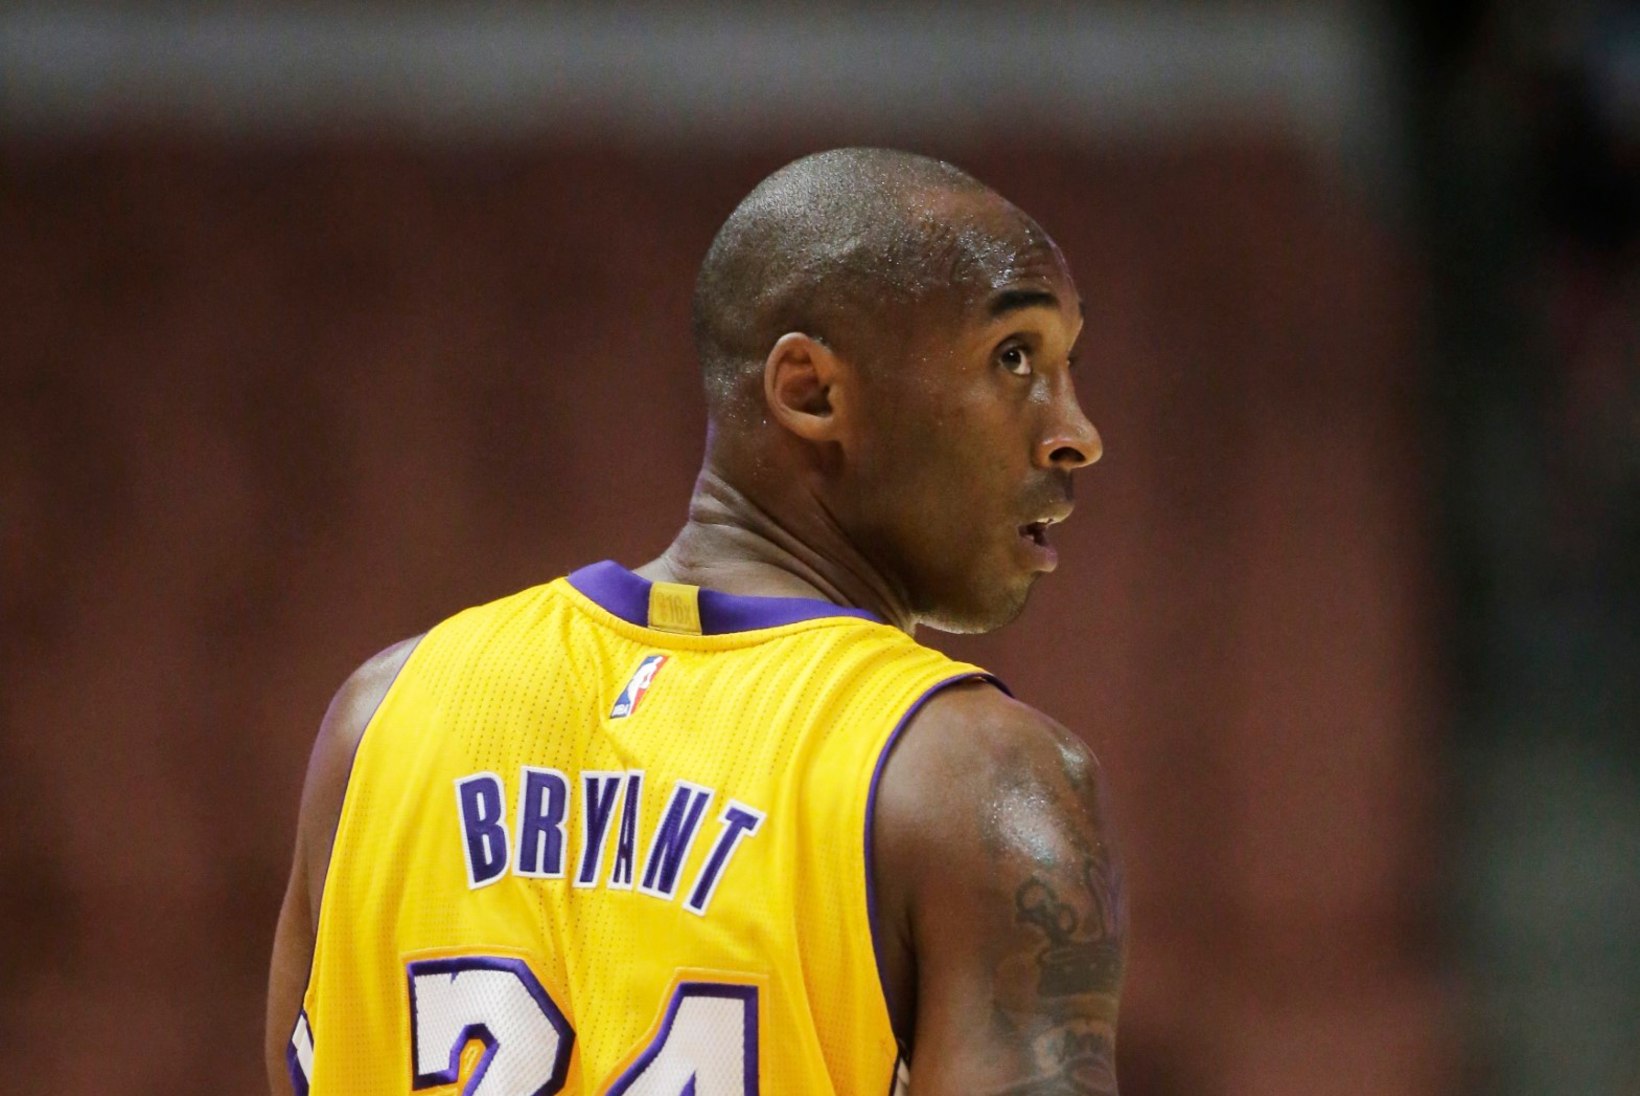 Kobe Bryanti sõnum teda alahindavatele ESPNi ajakirjanikele: Idioodikari!